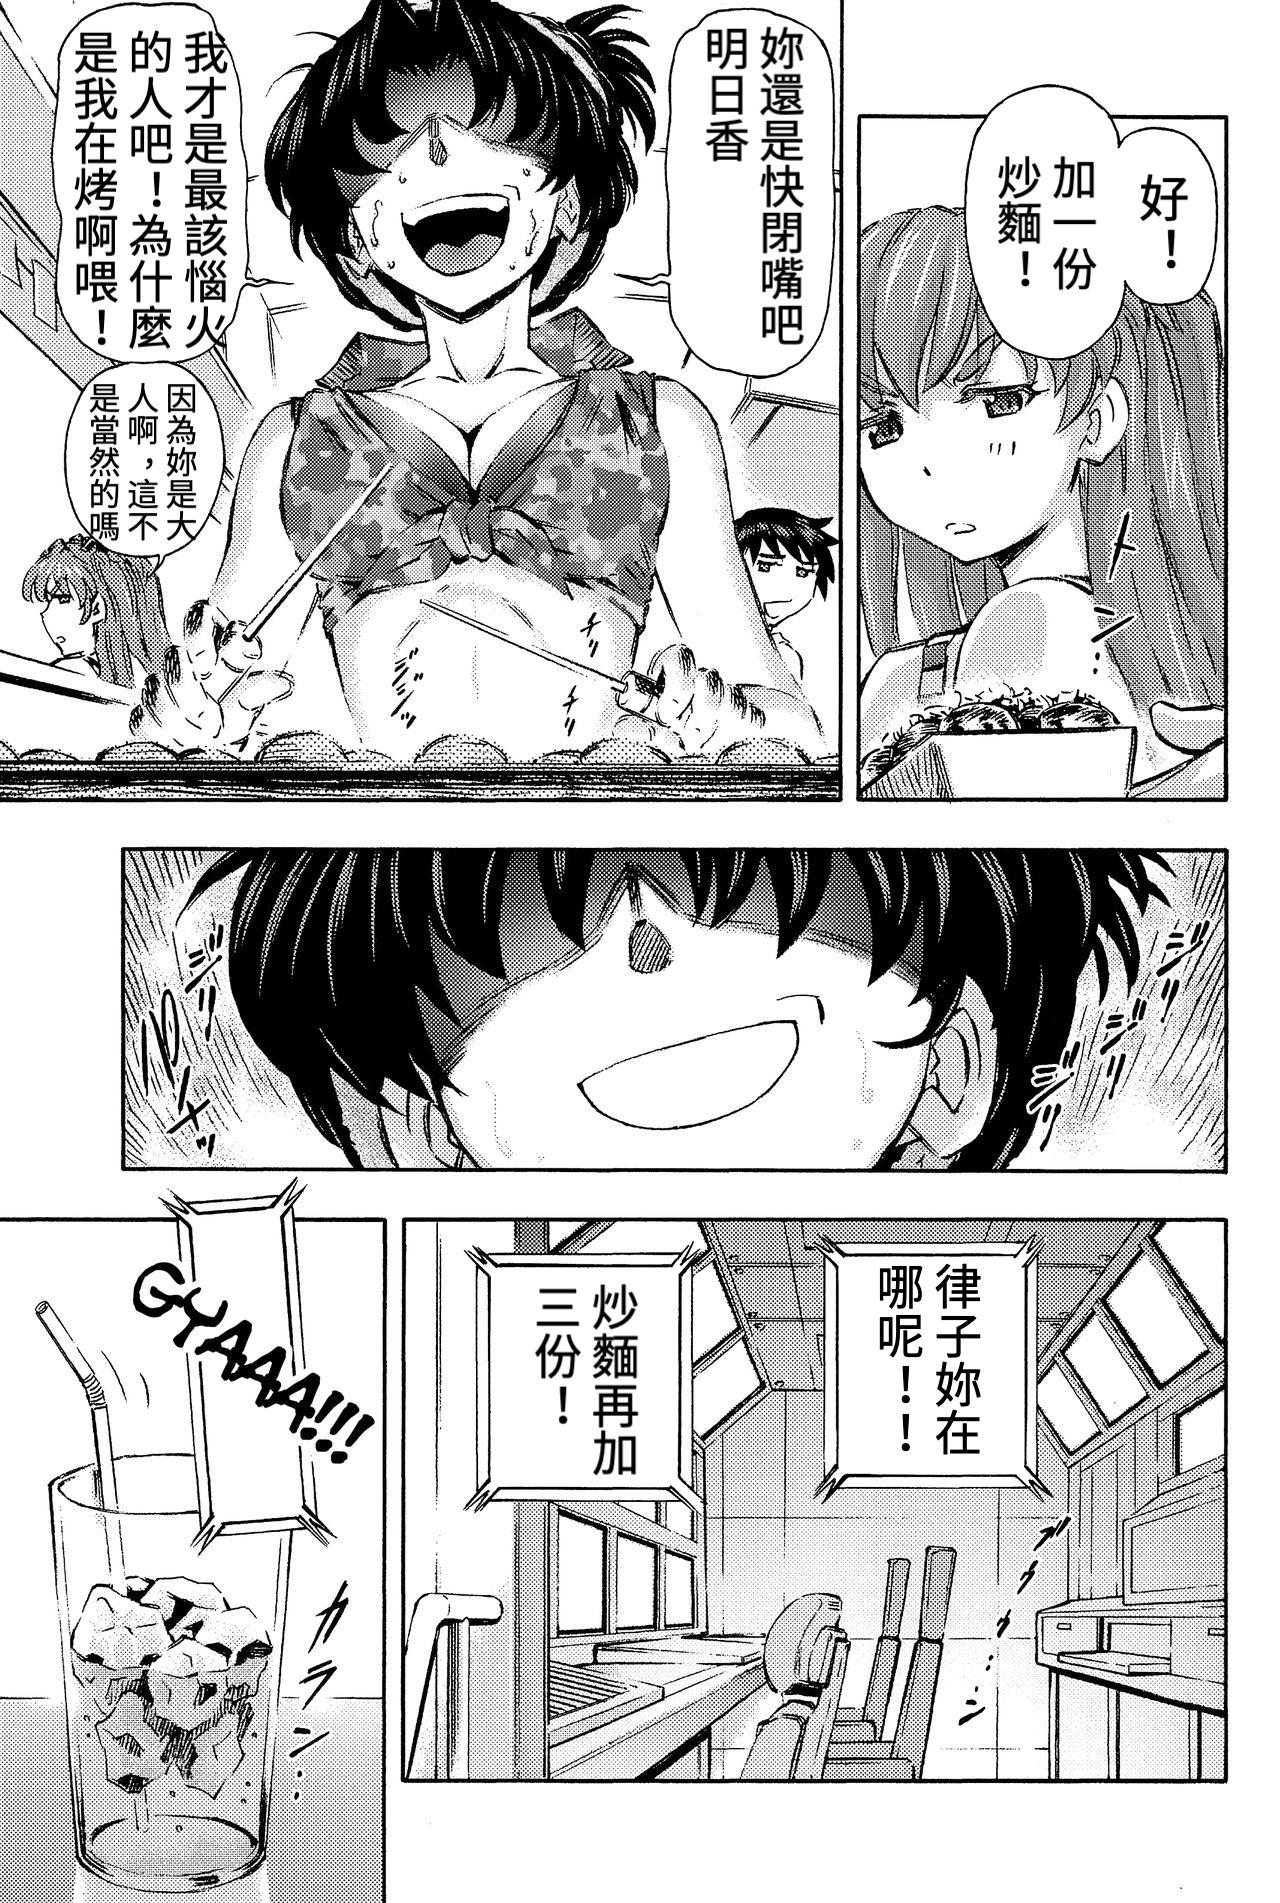 Longhair 3-nin Musume to Umi no Ie - Neon genesis evangelion Erotica - Page 4